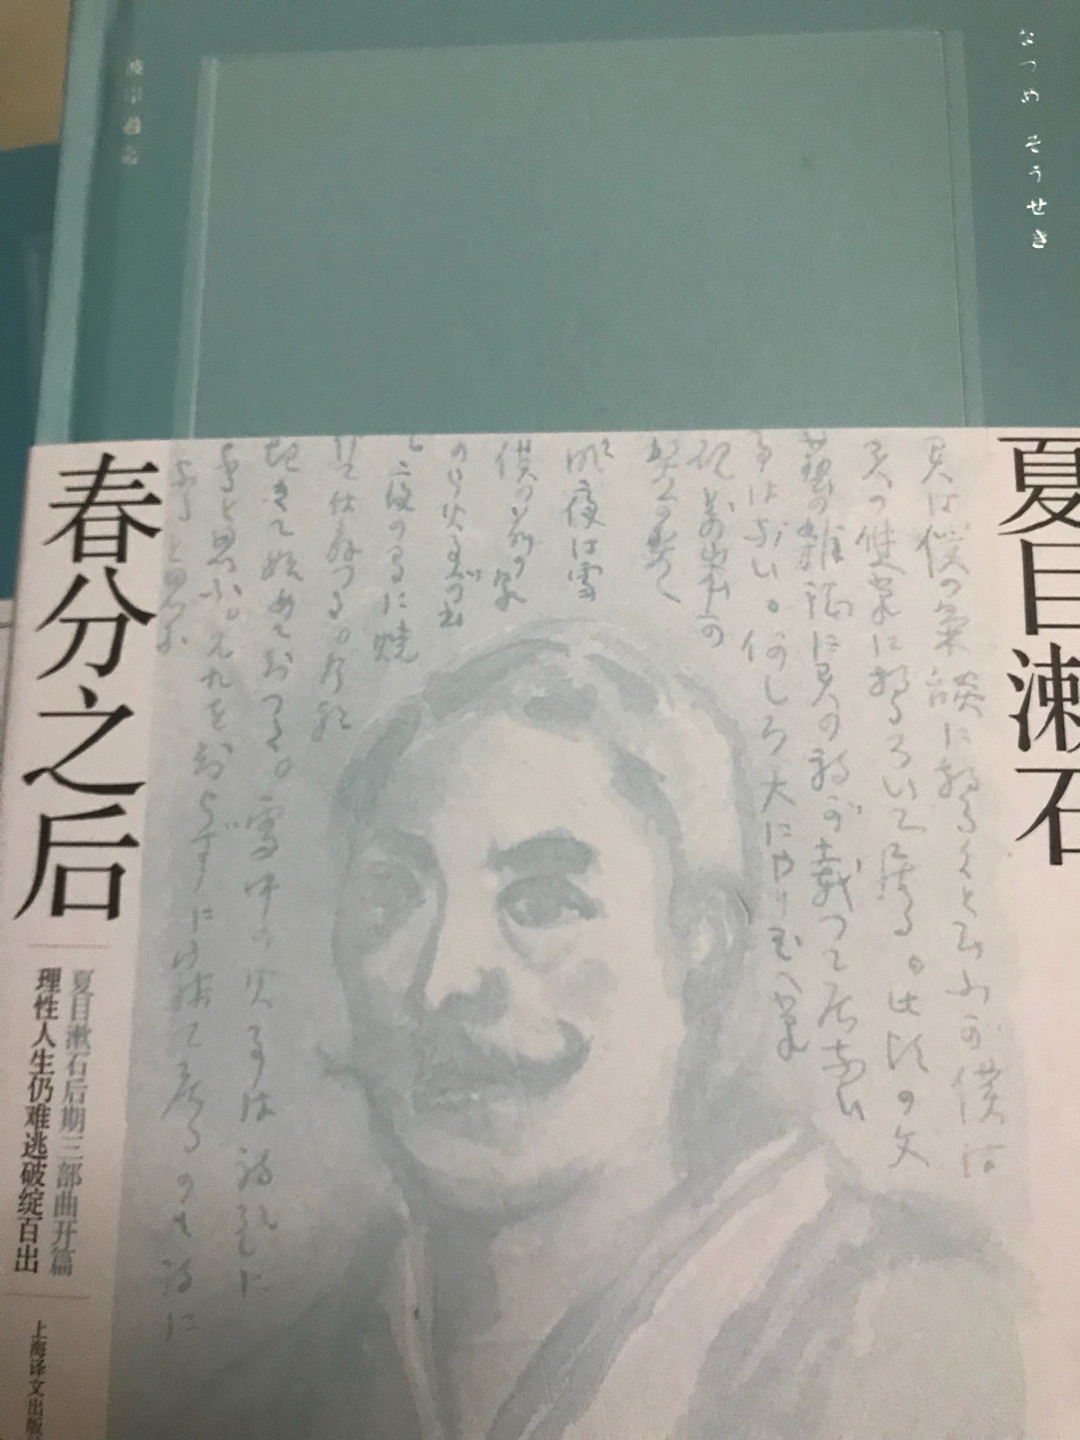 夏目漱石后三部曲第一部。